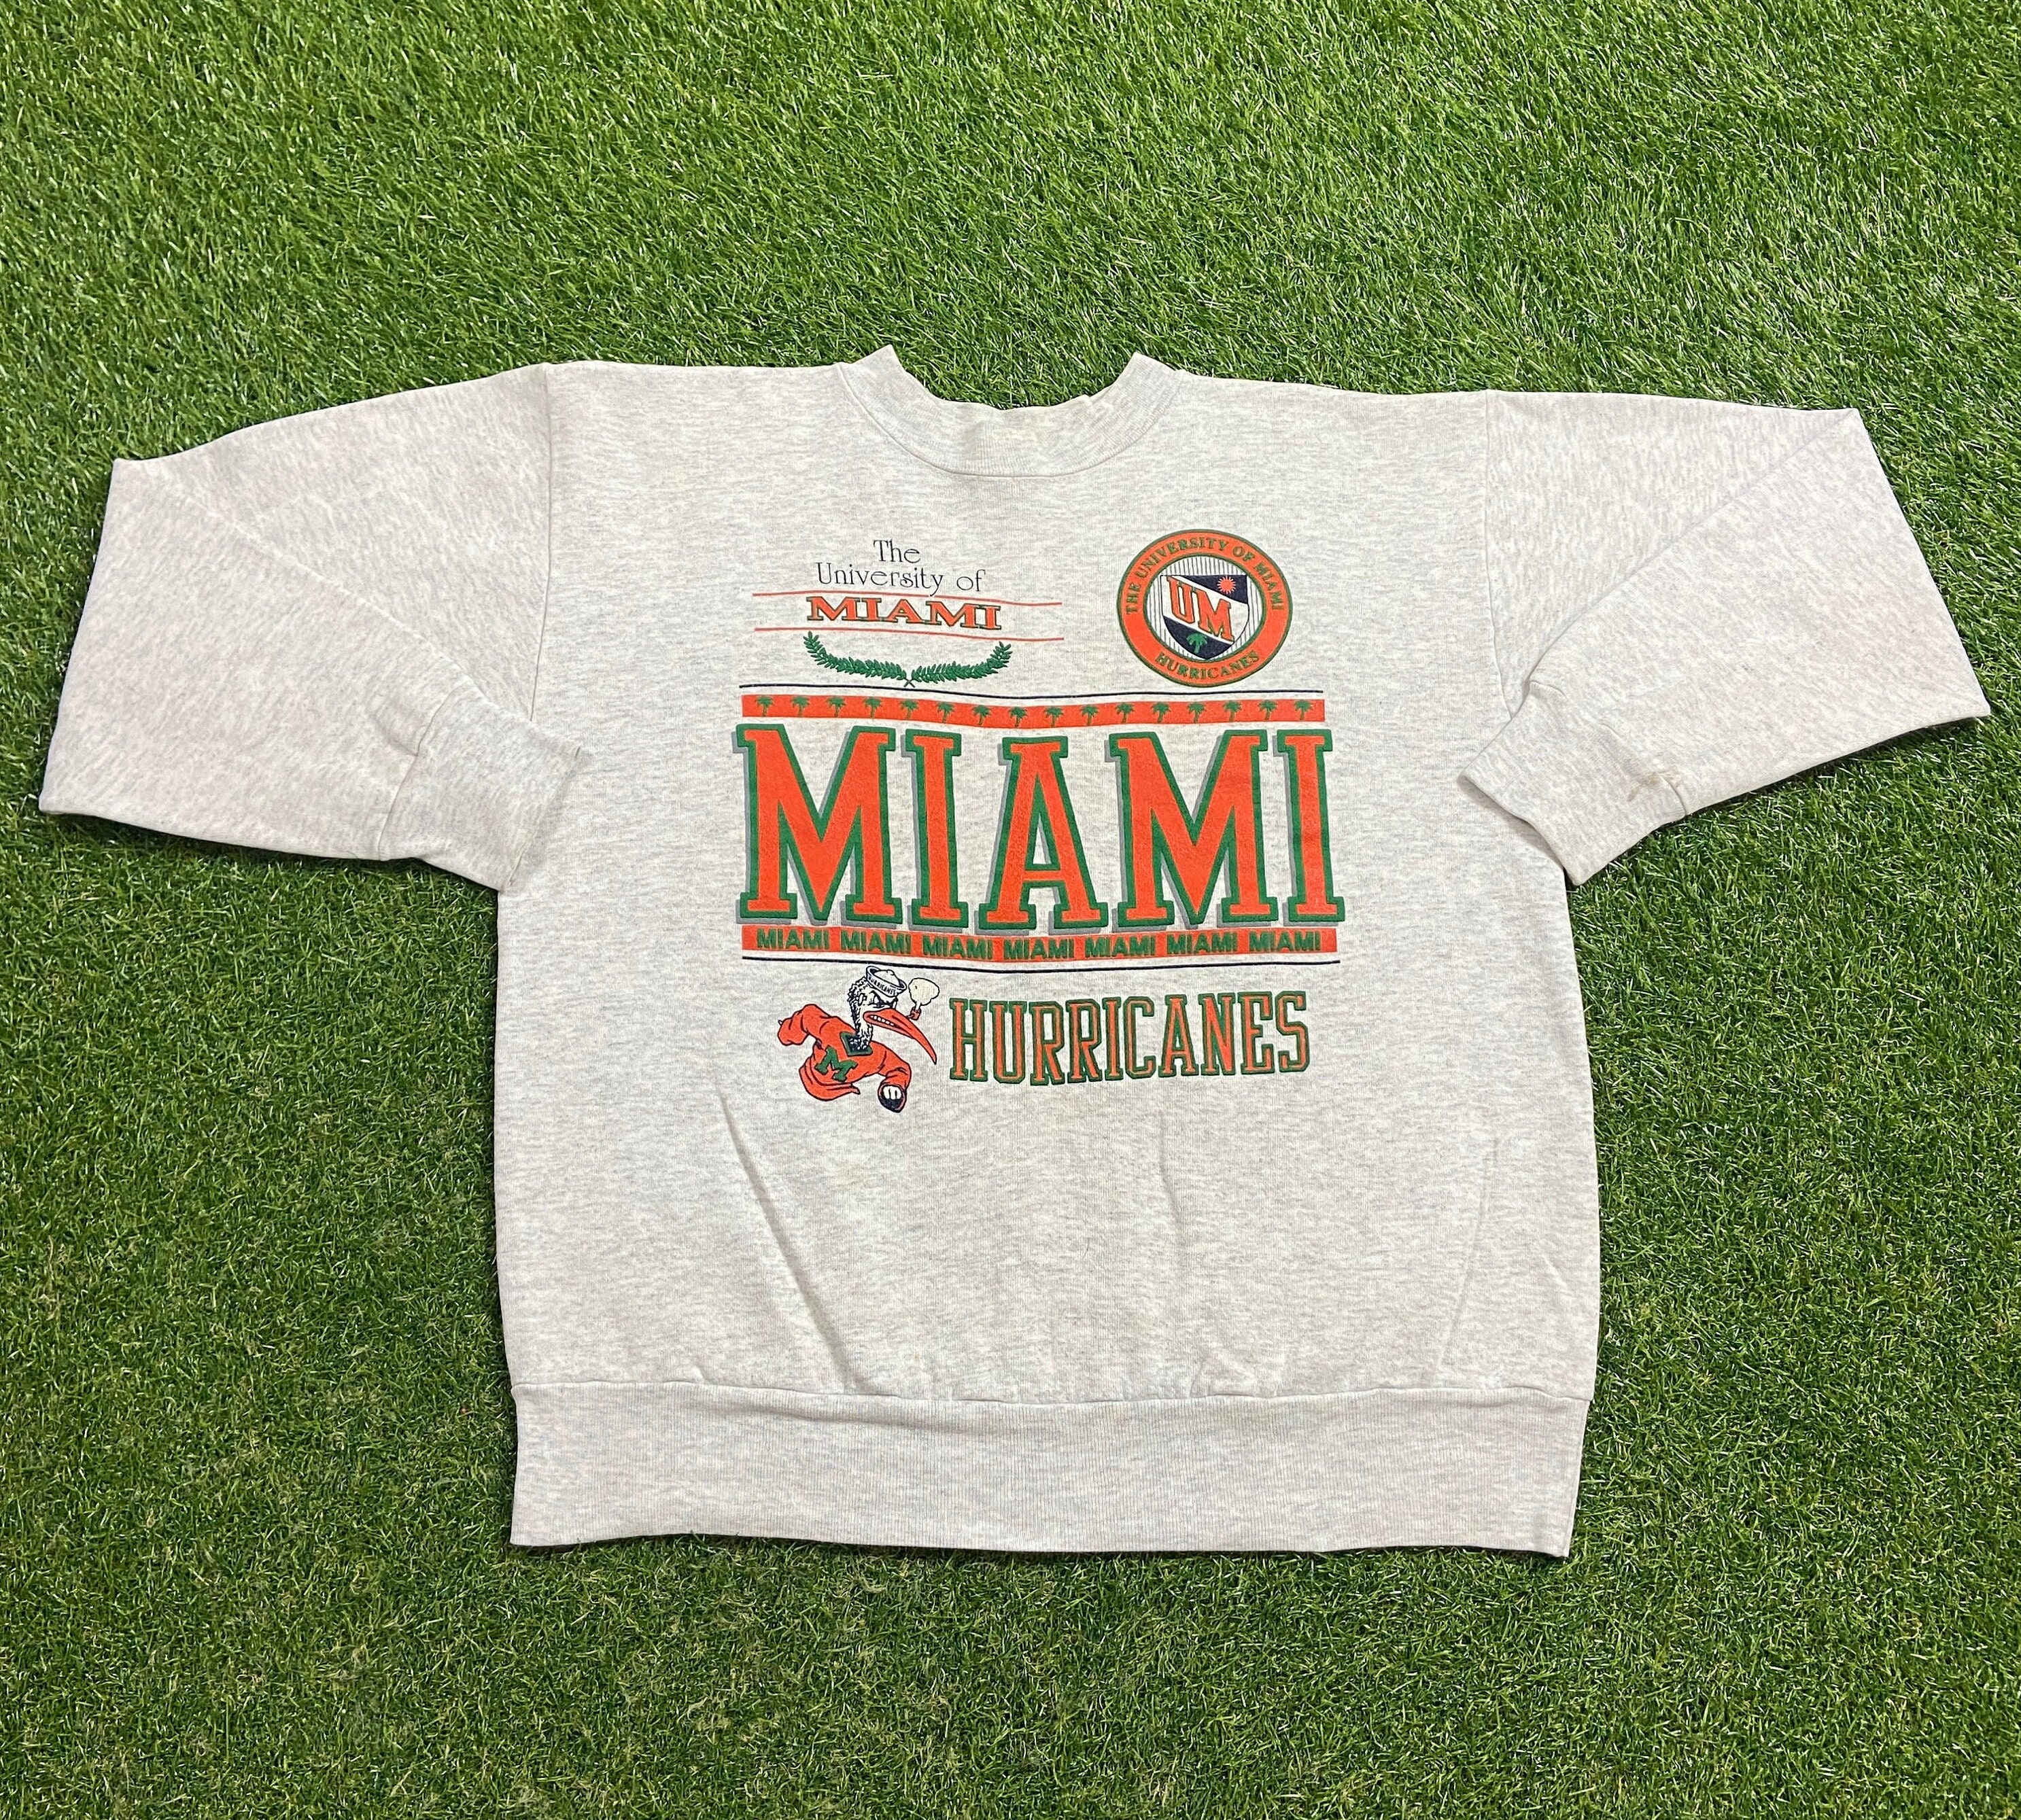 U of Miami Hurricanes Vintage T-Shirt 